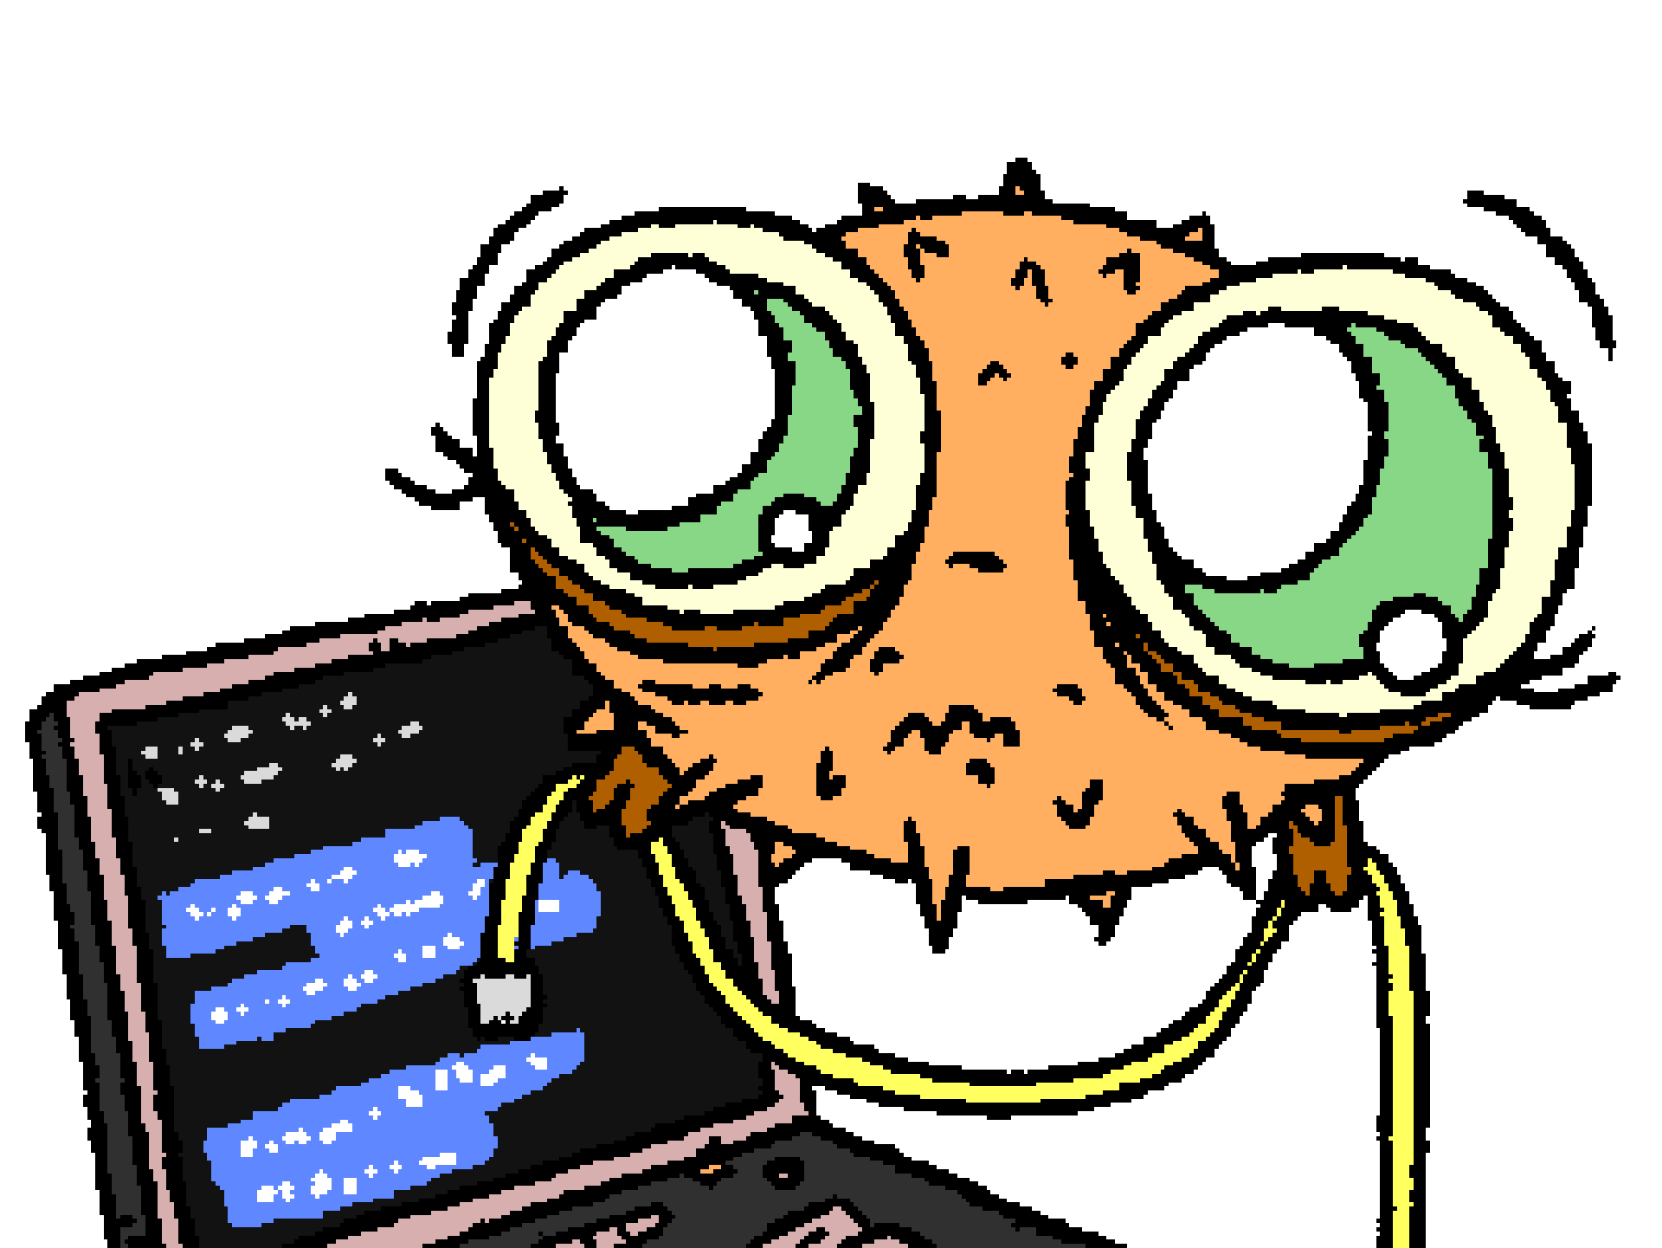 Маленькая рыбка Puffy с большими симпатичными глазками держит сетевой кабель. На заднем плане ноутбук, на экране которого черный терминал с белым текстом на синем фоне.